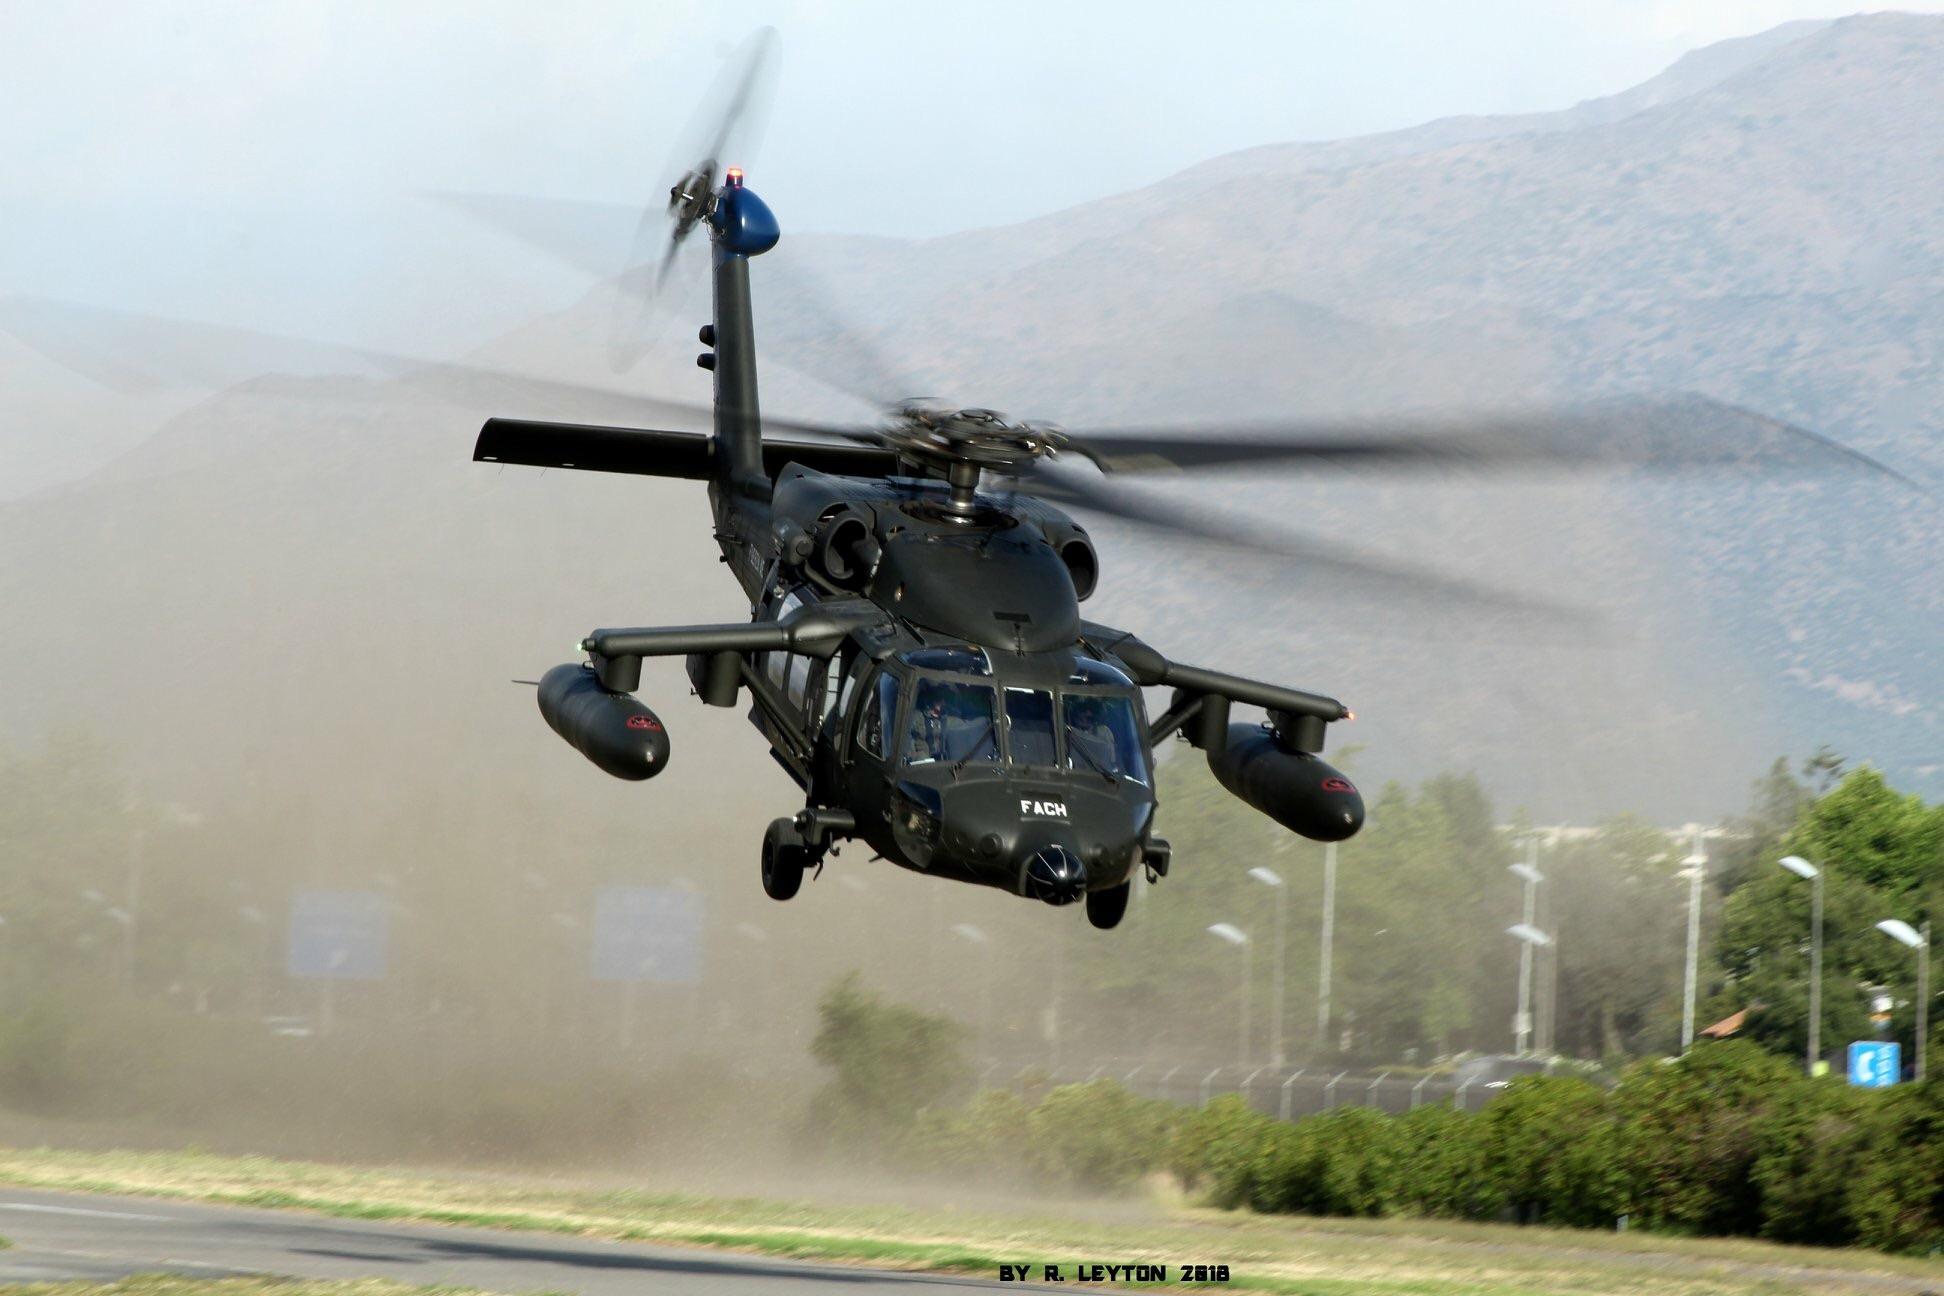 Filipina Terima Helikopter Sikorsky S-70i "Black Hawk" - Defence